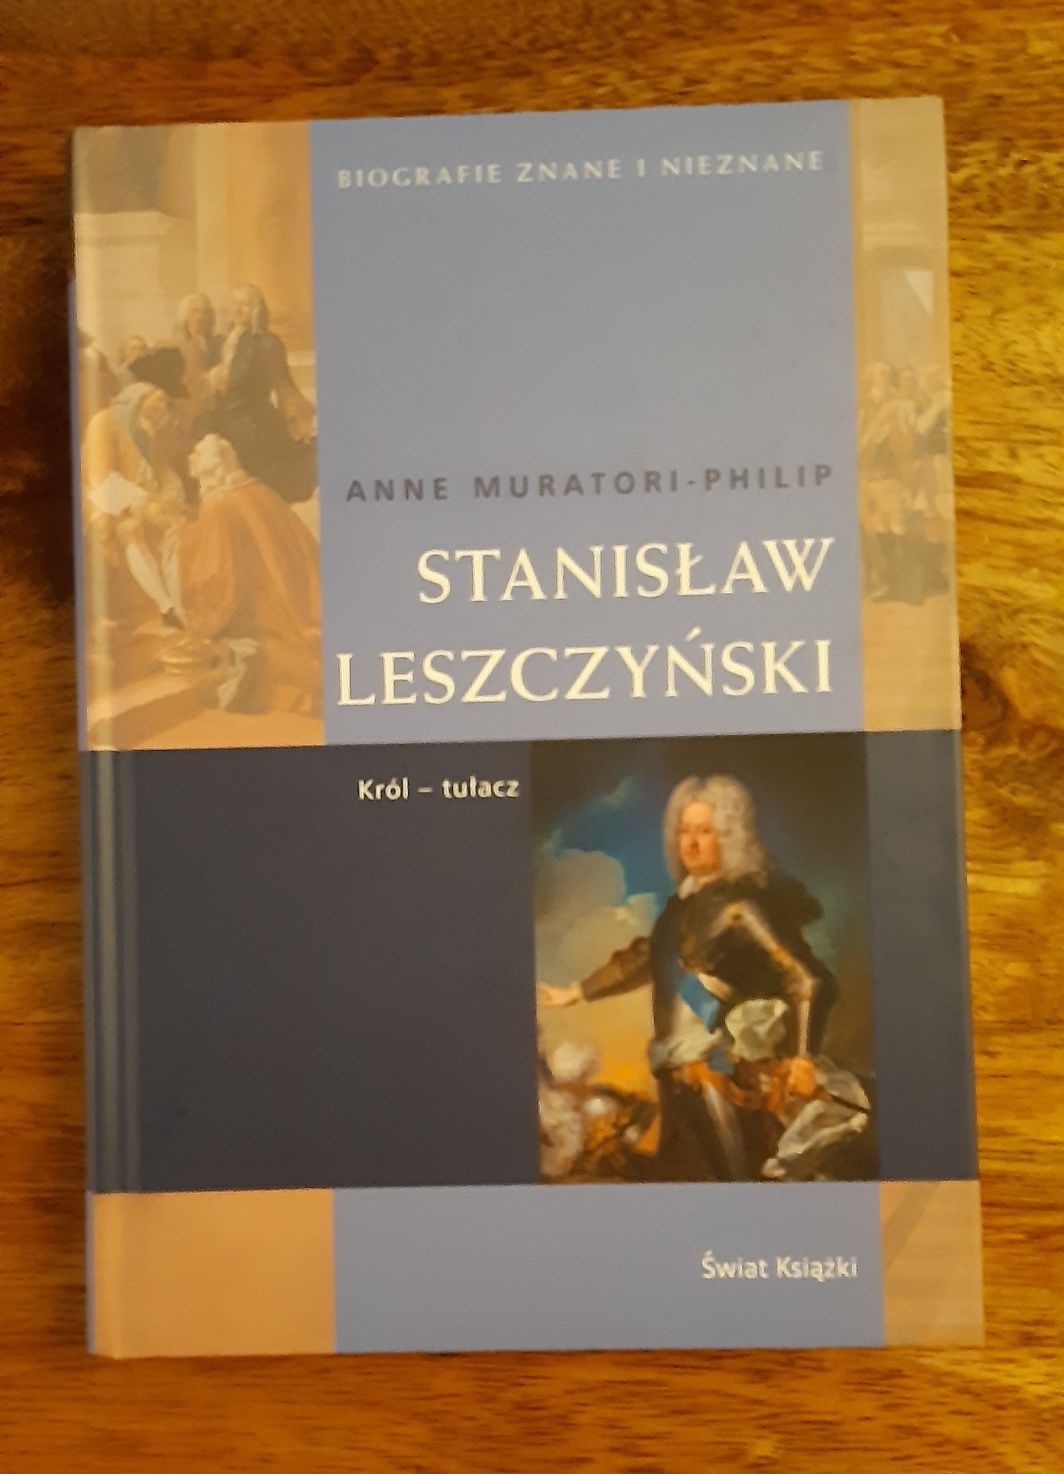 Anne Muratori-Philip "Stanisław Leszczyński"